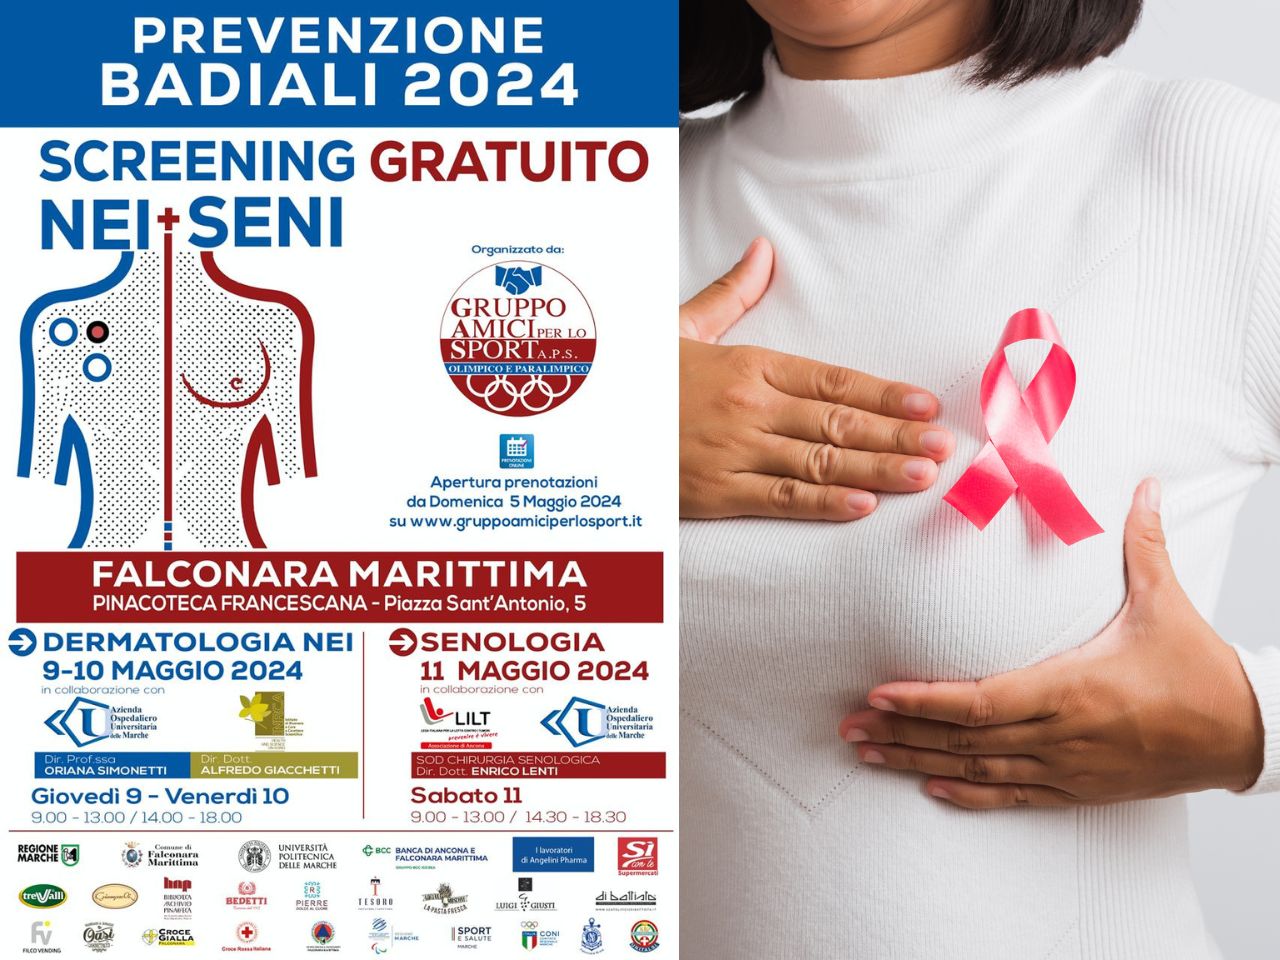 A Falconara, tre giorni di screening dermatologici e senologici gratuiti